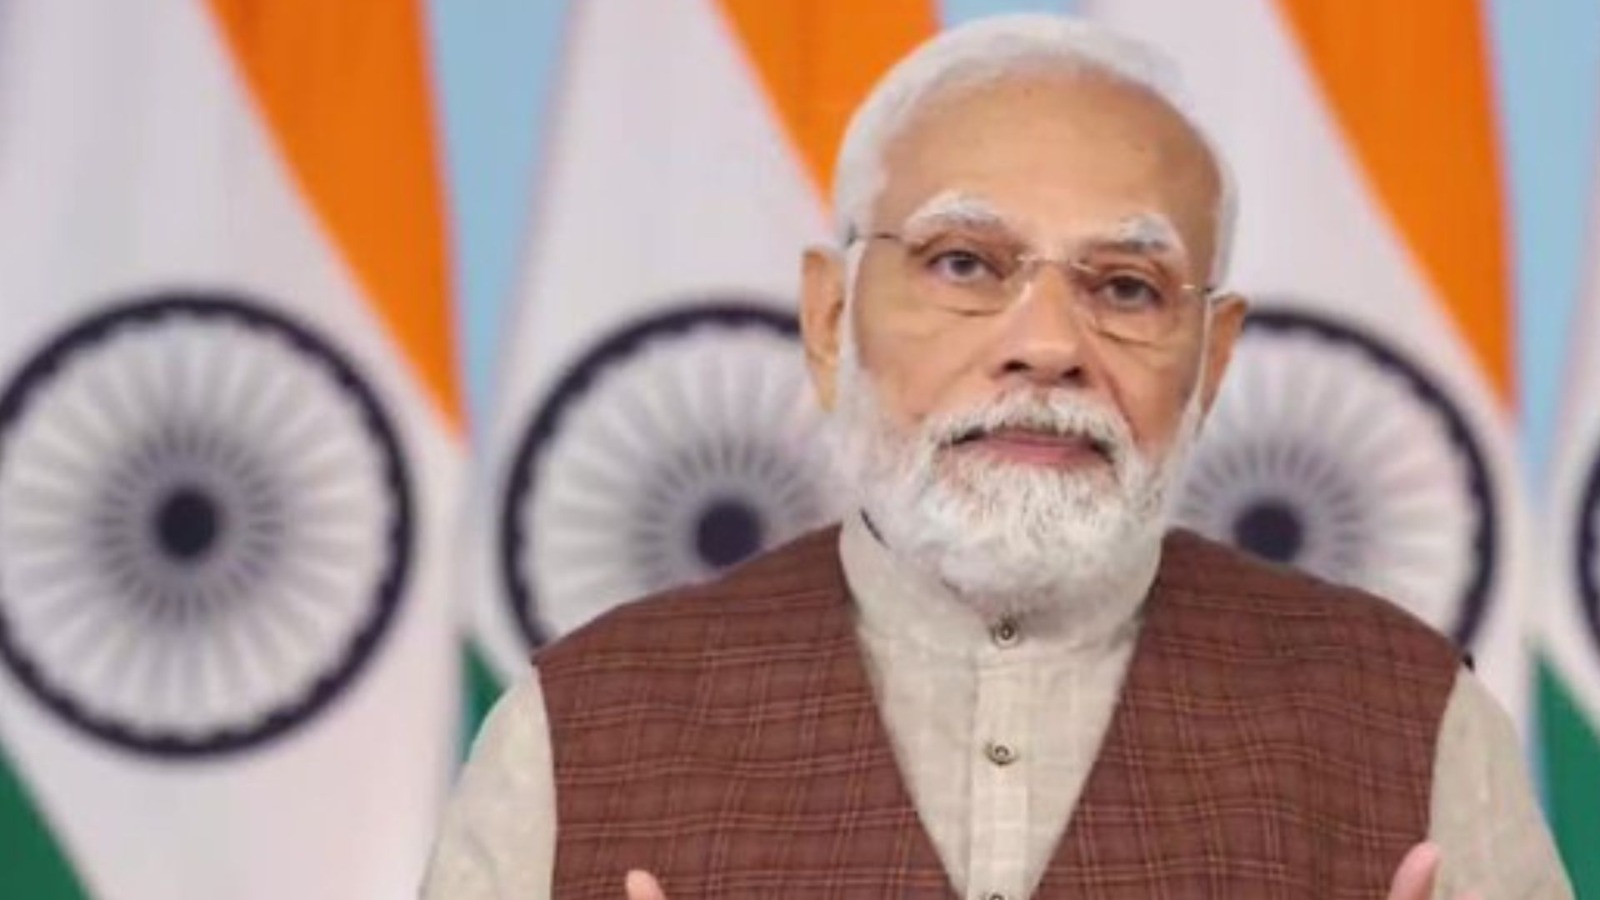 हम बुनियादी ढांचे के विकास को अर्थव्यवस्था के लिए प्रेरक शक्ति मानते हैं : PM मोदी 